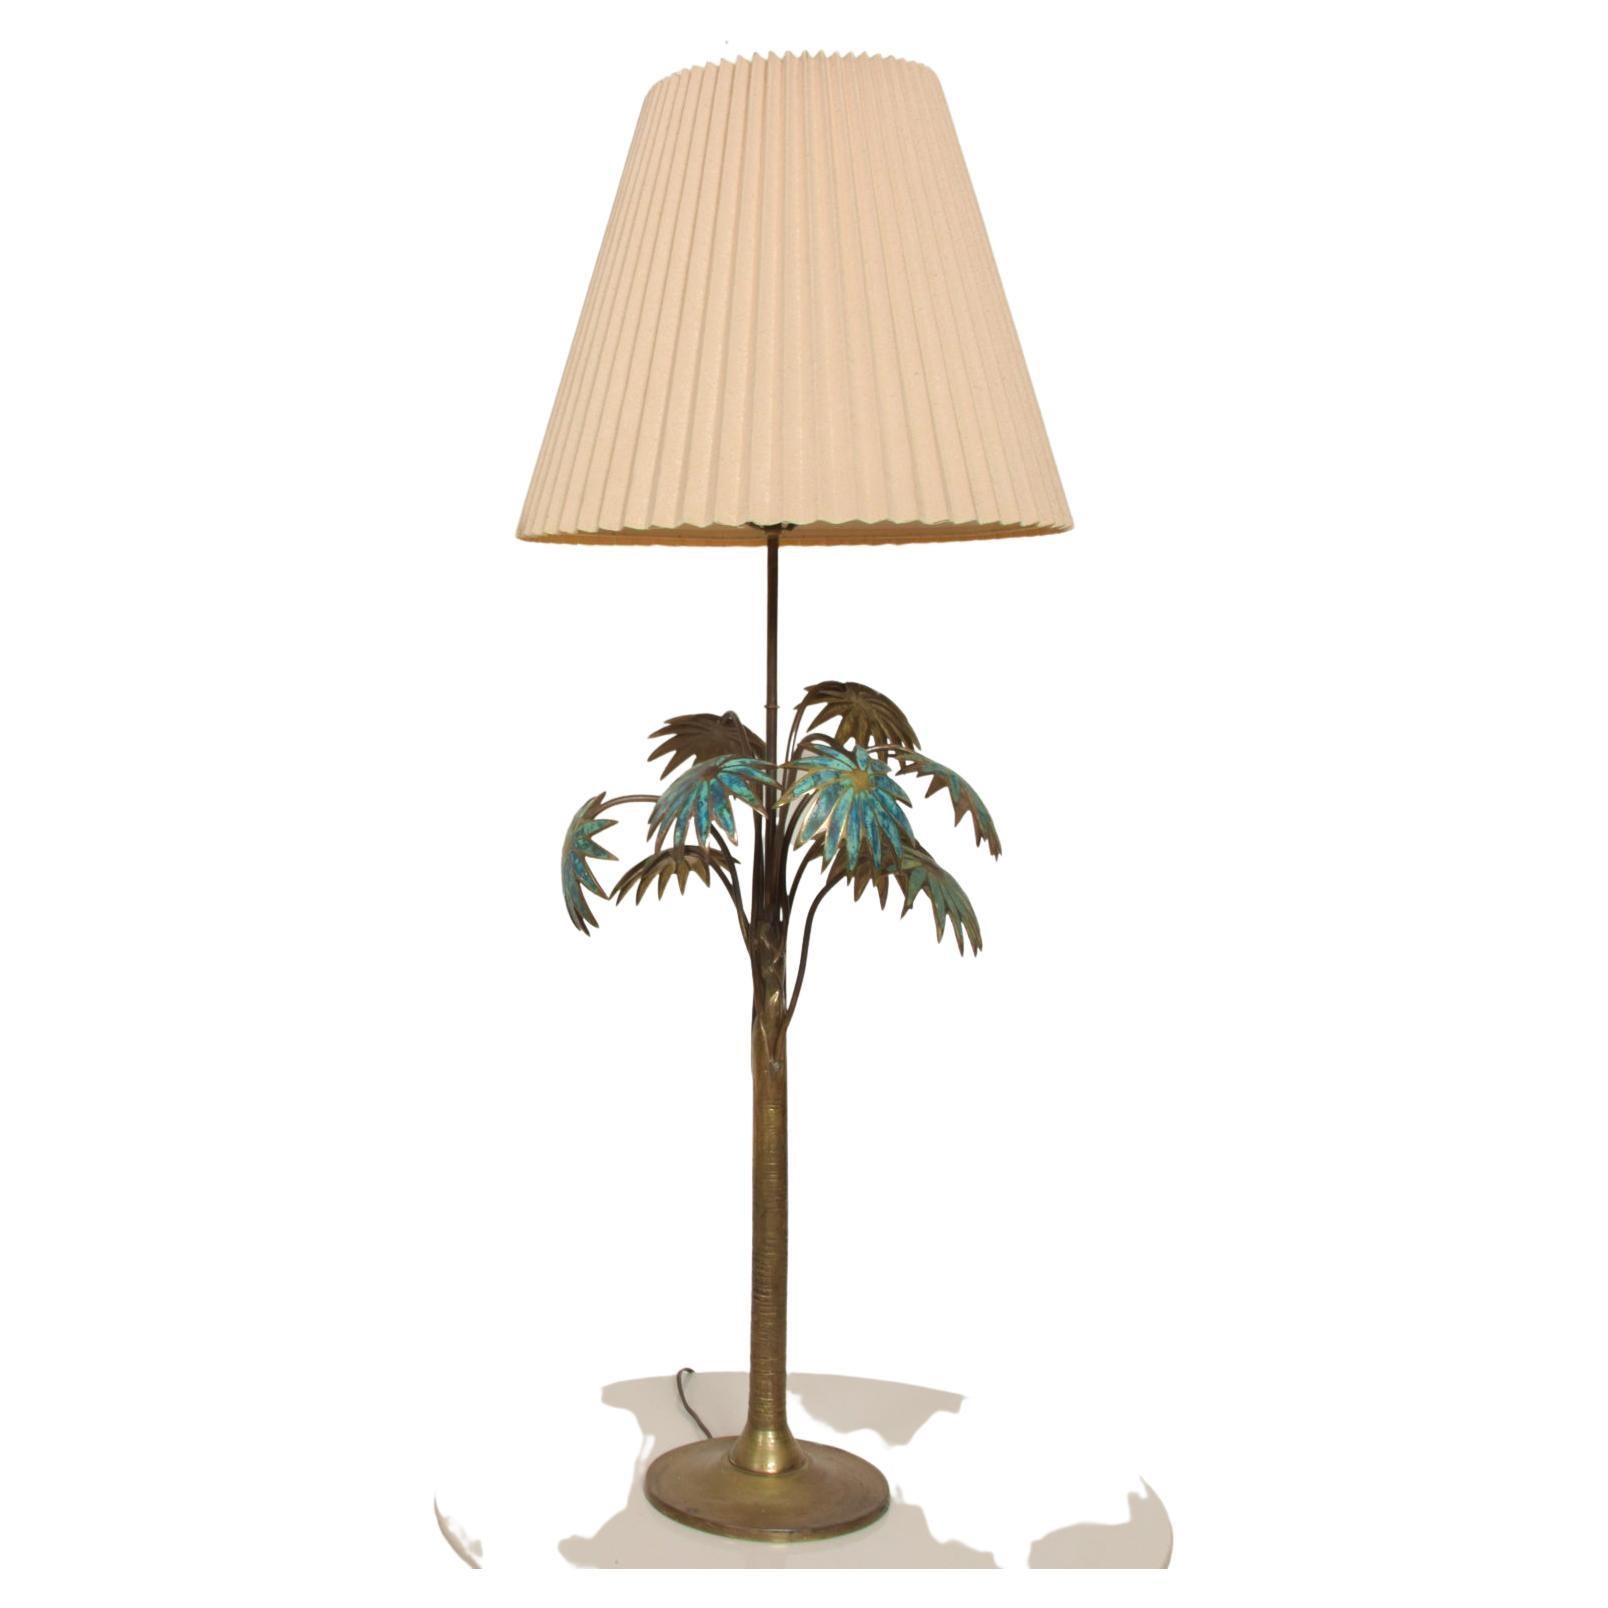 Exquise lampe de table Pepe Mendoza Palm Tree Tall
Fabriqué au MEXIQUE vers les années 1950
Bronze et malachite.
Non marqué.
33,5 H (base de la douille), 16 in de diamètre (hors tout), base 8 in de diamètre
Original non restauré Vintage Preowned